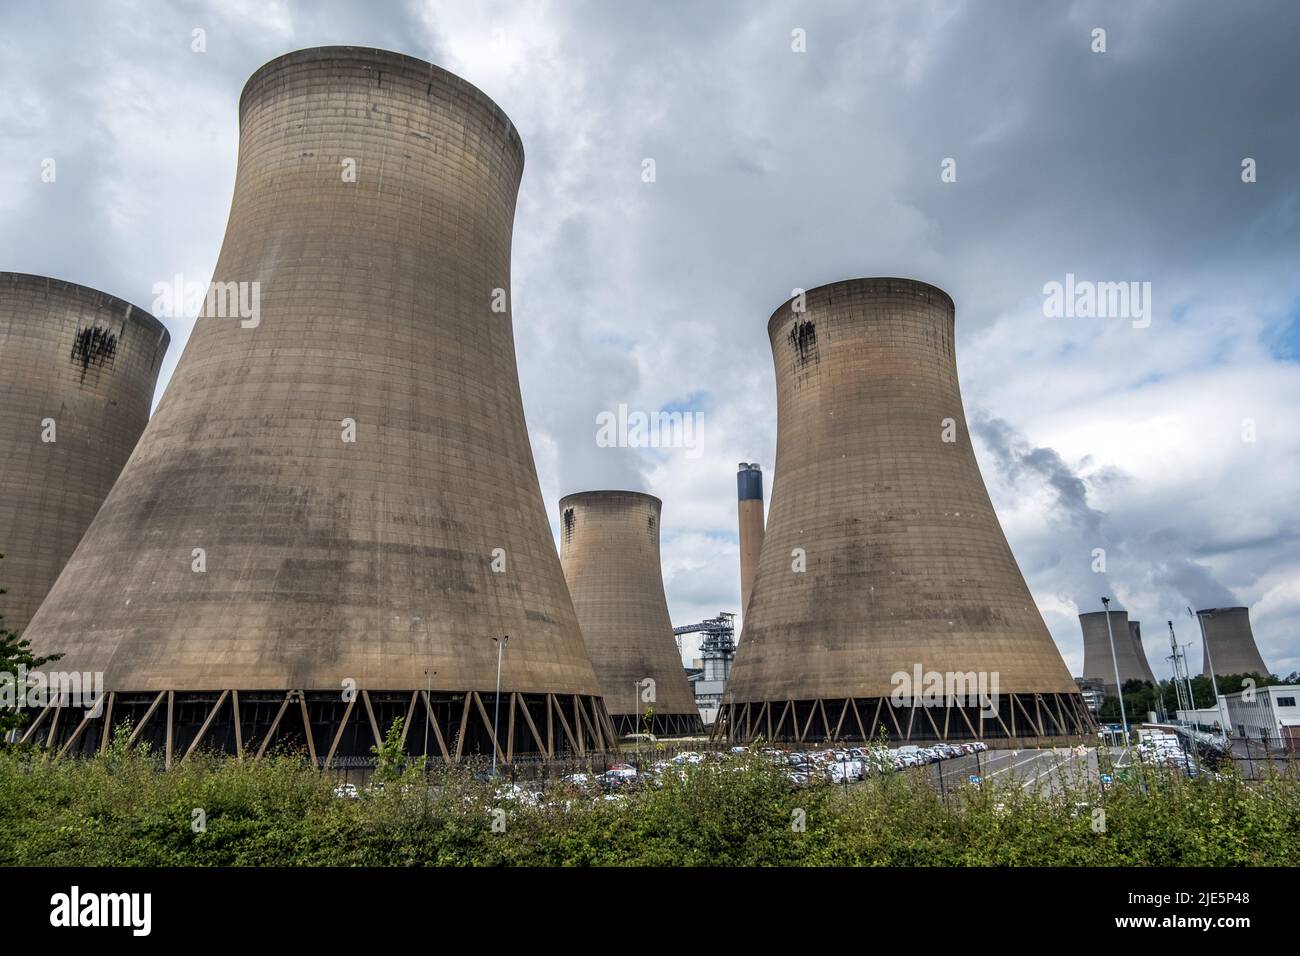 Tours de refroidissement et vapeur à la centrale de Drax, une grande centrale à biomasse du Nord du Yorkshire, Angleterre, Royaume-Uni. Banque D'Images